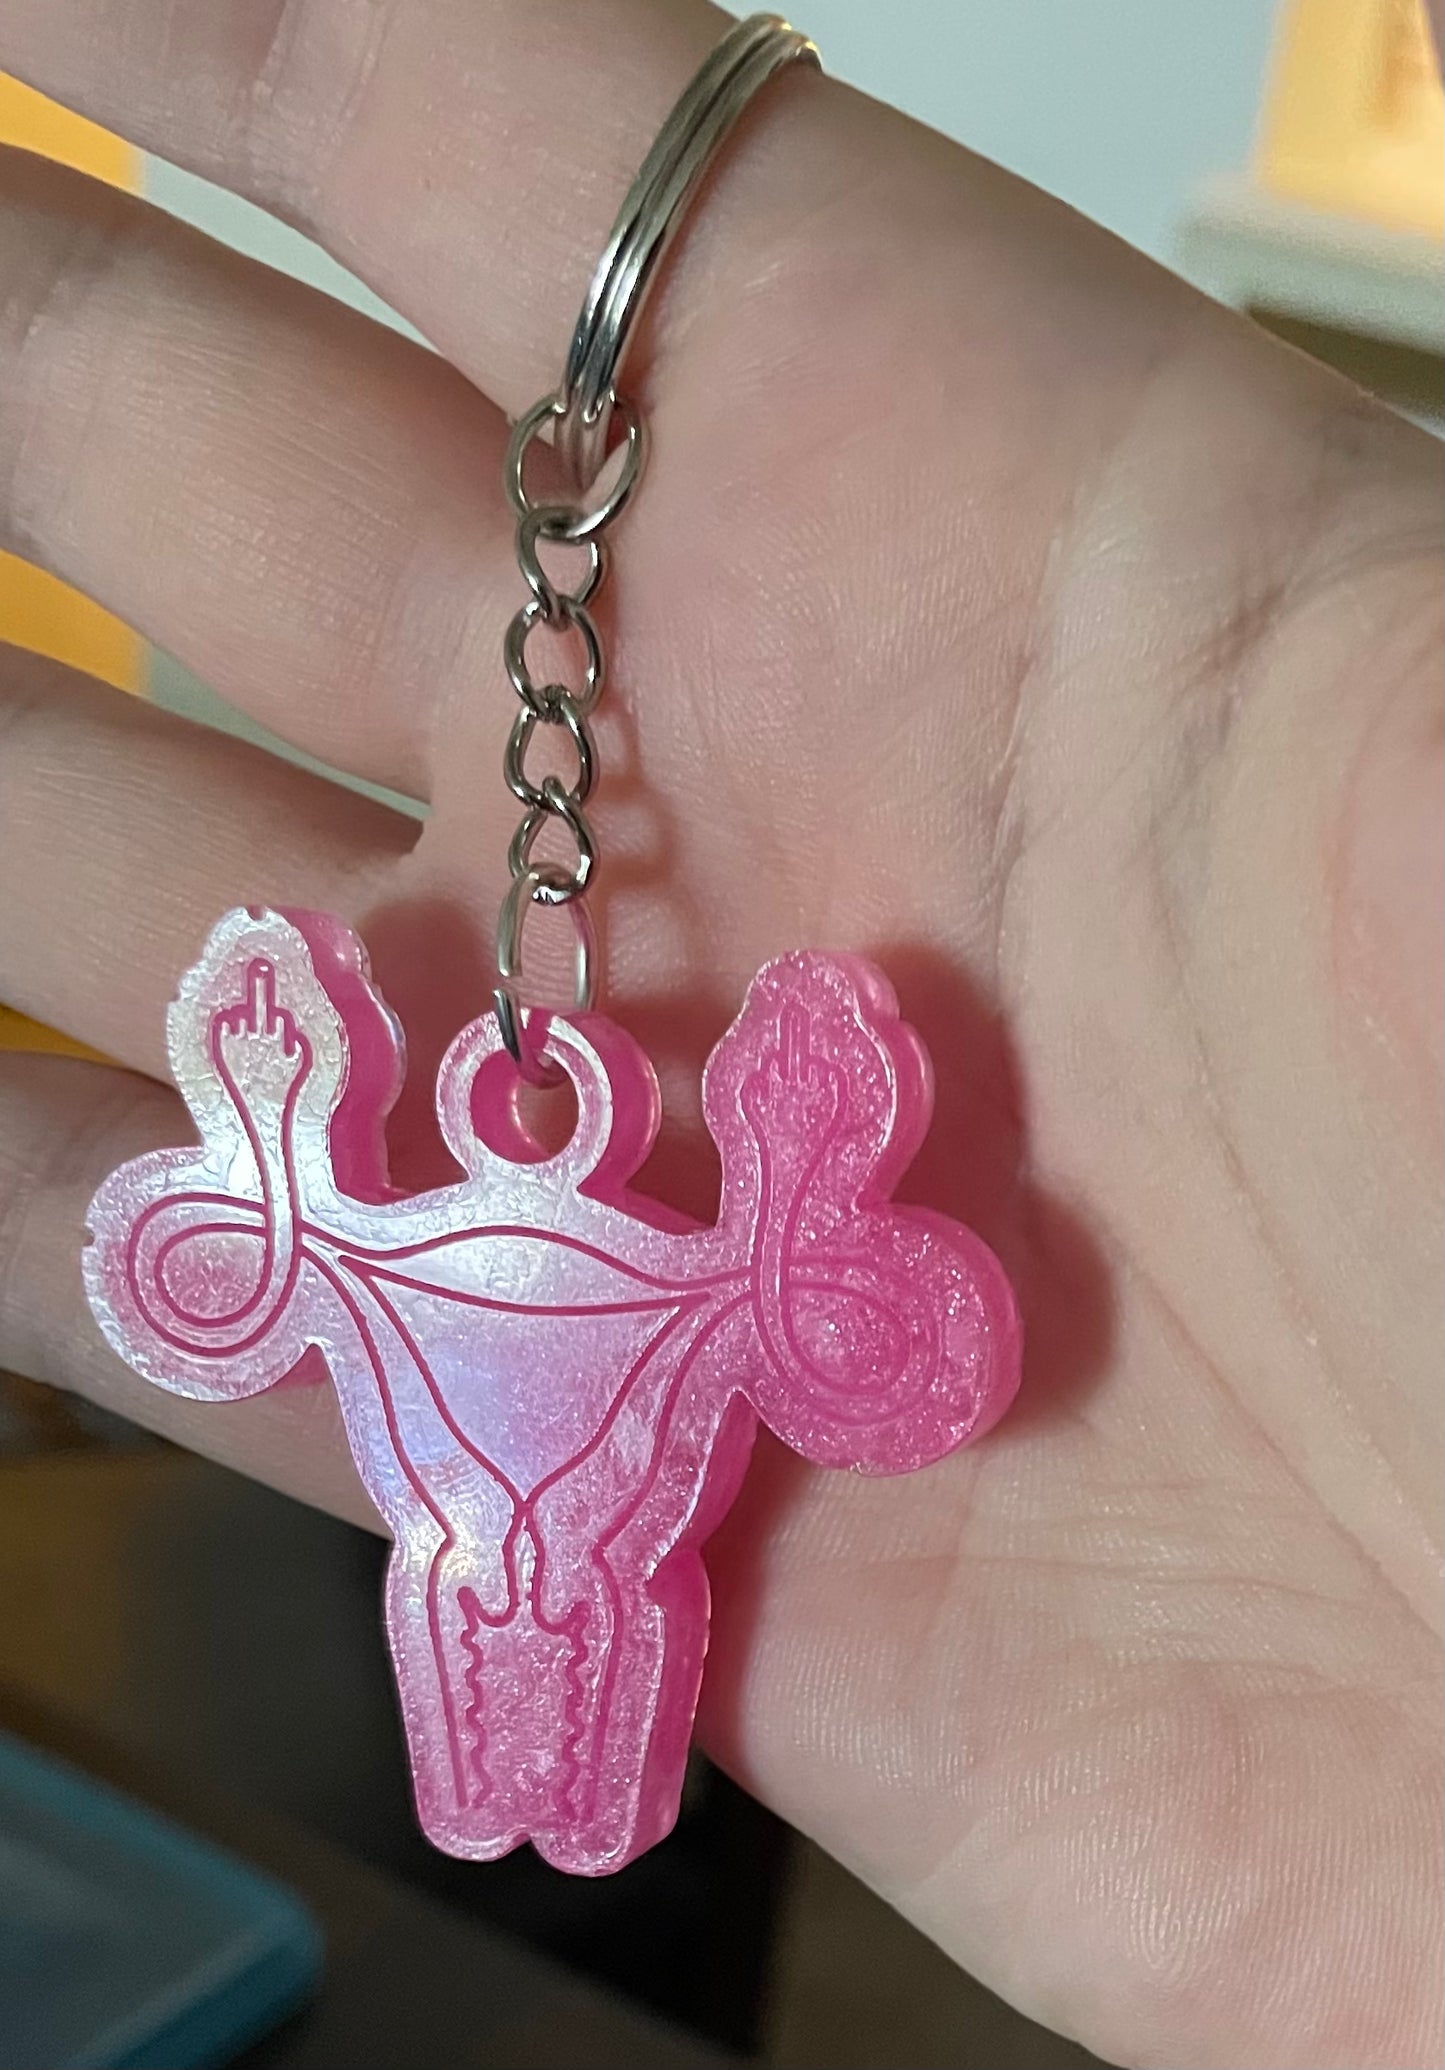 Angry Uterus Keychain in hand